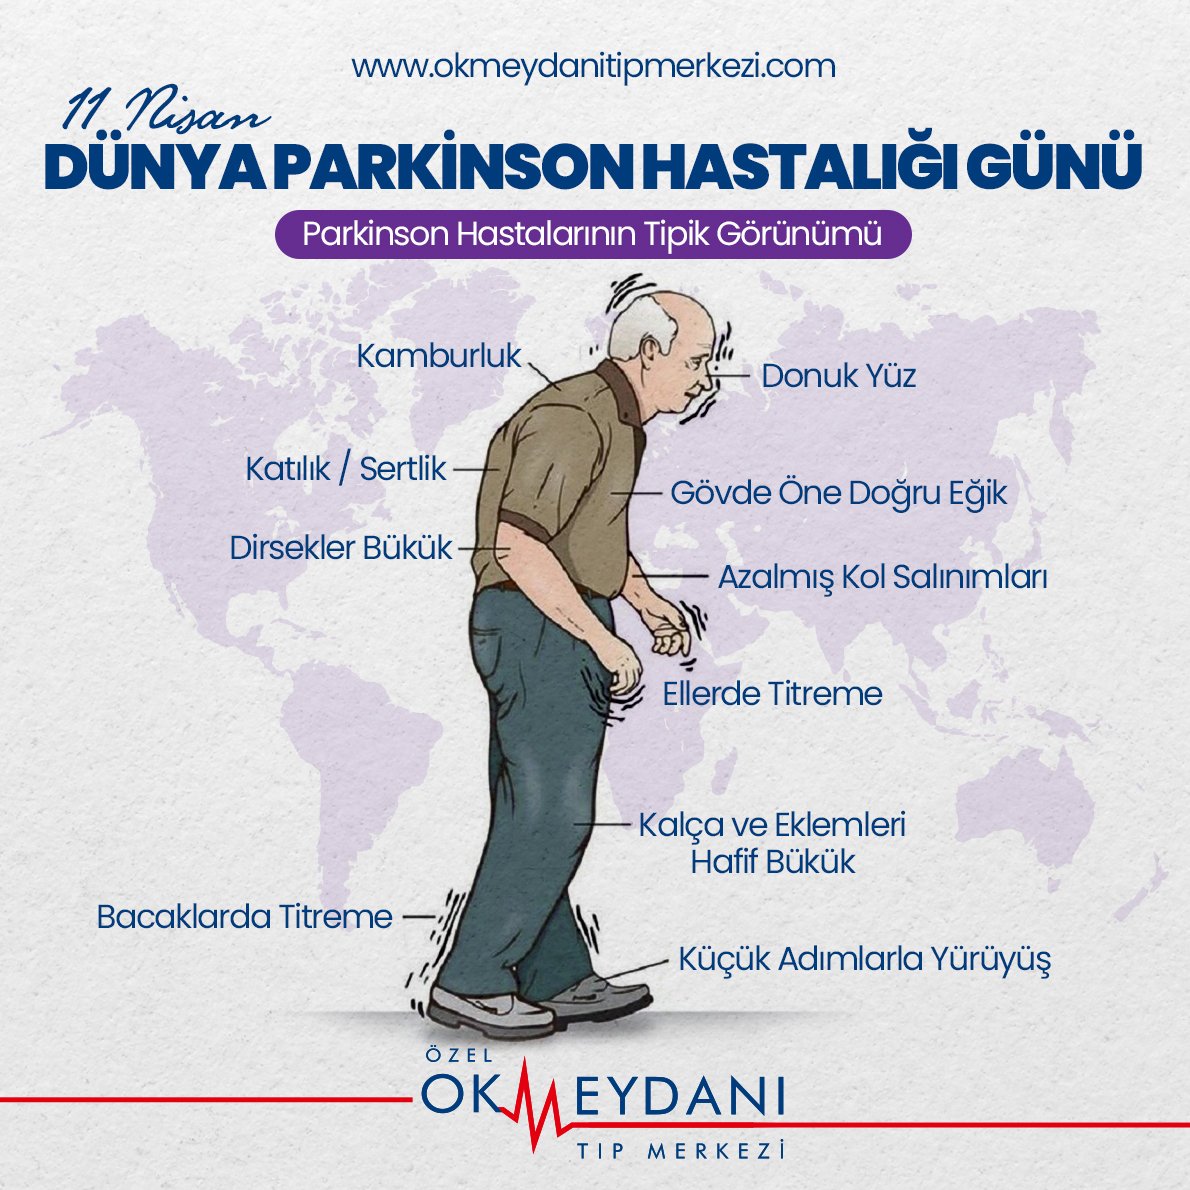 Parkinson hastalığı genel olarak ileri yaşlarda ortaya çıkar. Kendini yavaş yavaş hissettirir. #Parkinsonhastalığı ellerde titremeye, duyu bozukluğuna ve hareketlerde yavaşlığa sebep olabilir.
Parkinson hastalığında #erkenteşhis ile çok daha kolay mücadele edilir. Geç kalmayın.